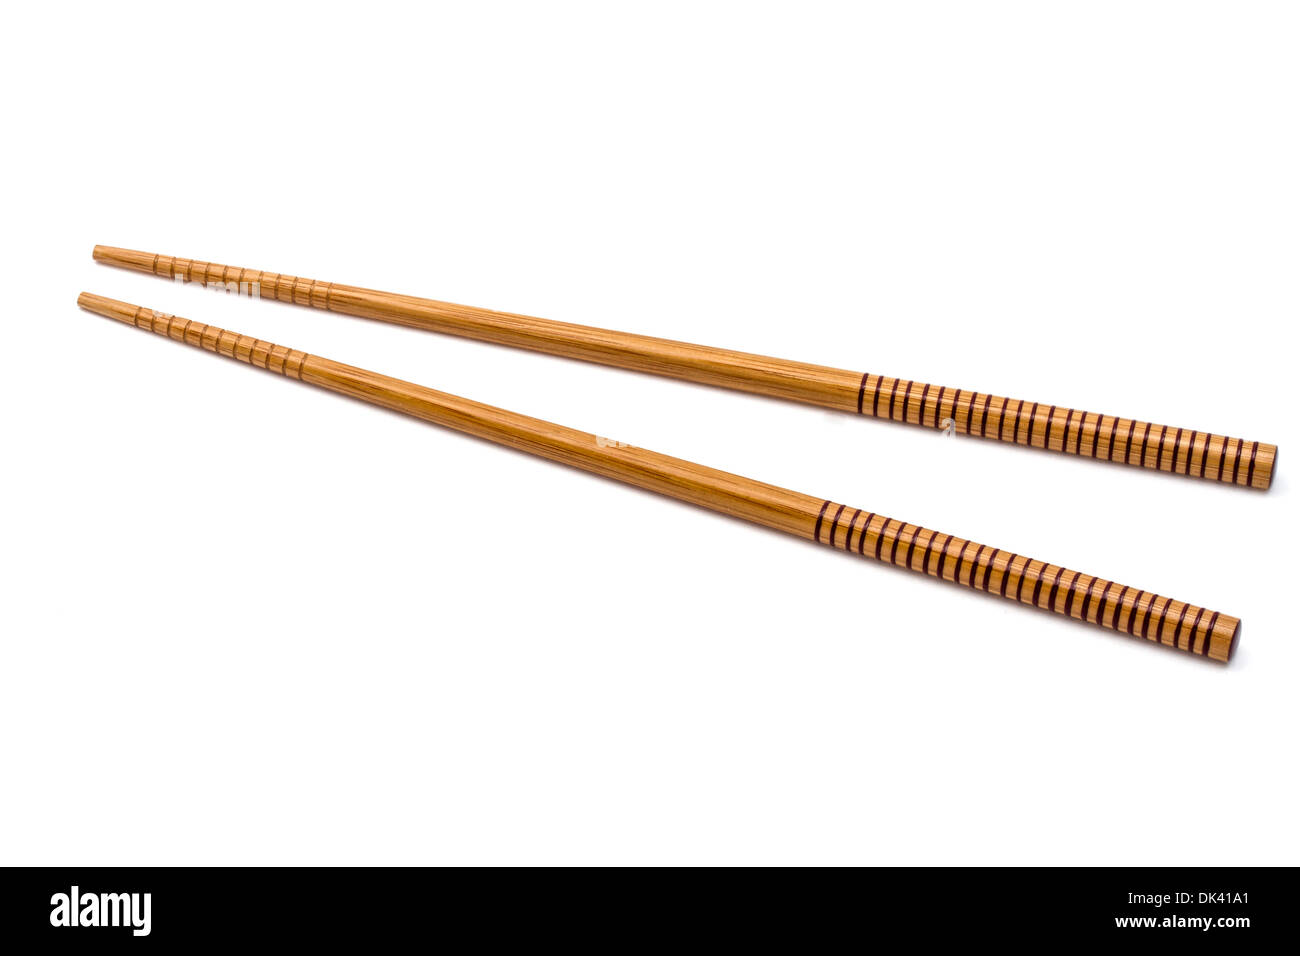 Wood chopsticks isolated on white background Stock Photo